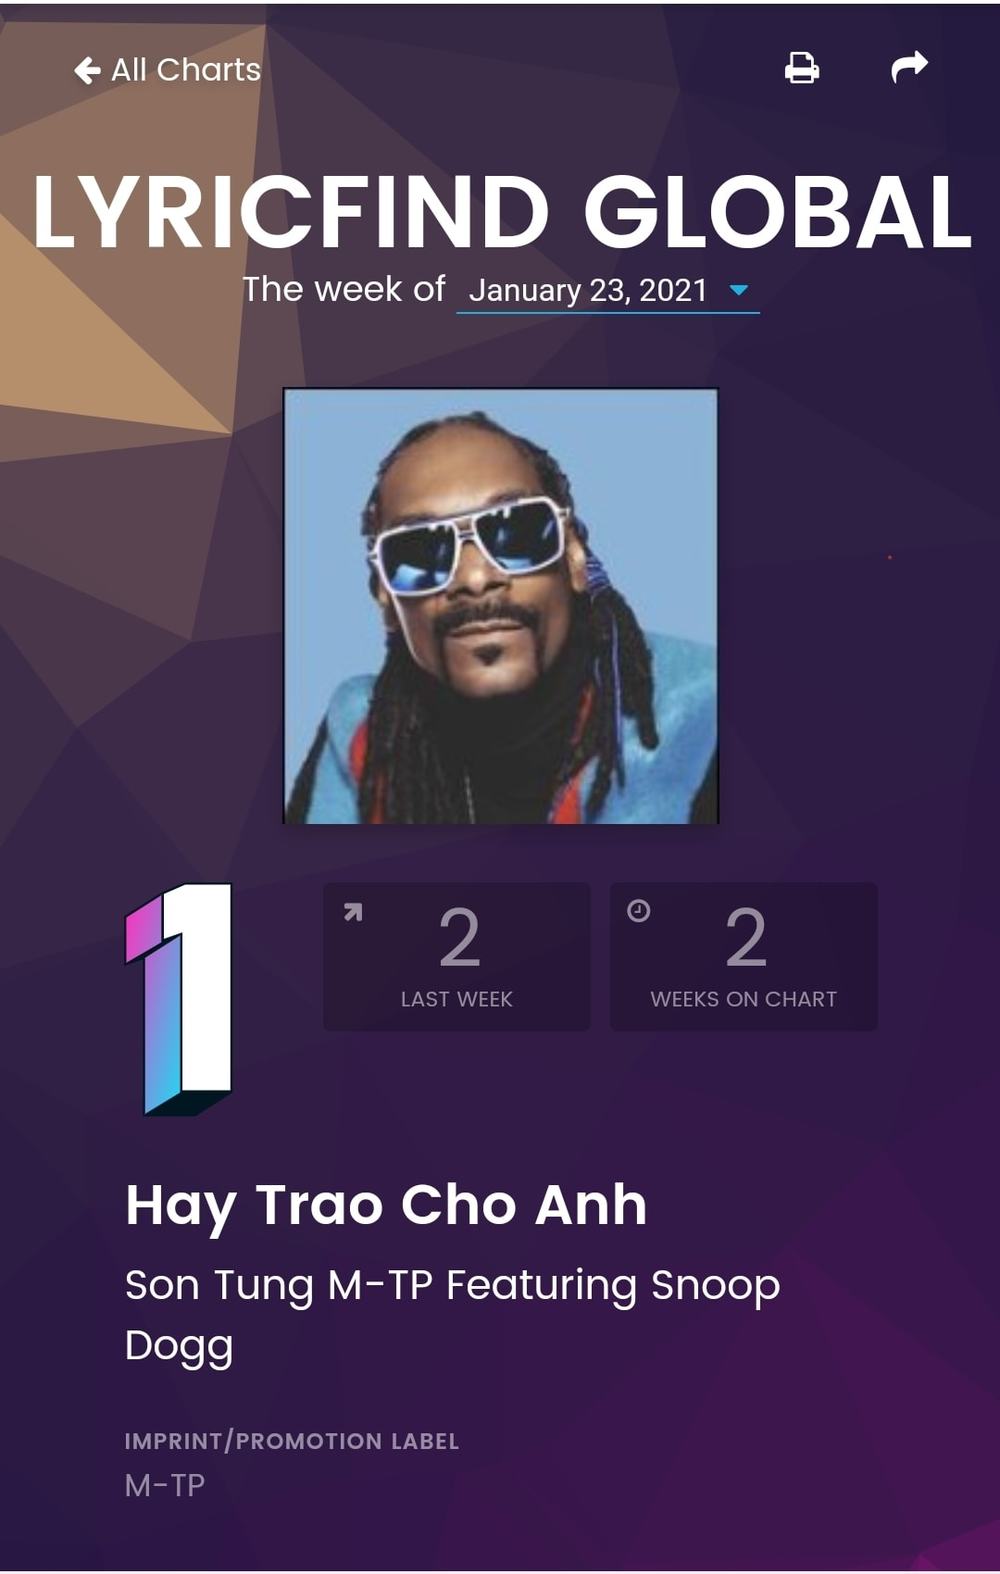 
Ca khúc Hãy trao cho anh của Sơn Tùng - Snoop Dogg chính thức debut #1 Billboard Lyricfind Global. (Ảnh: Chụp màn hình)